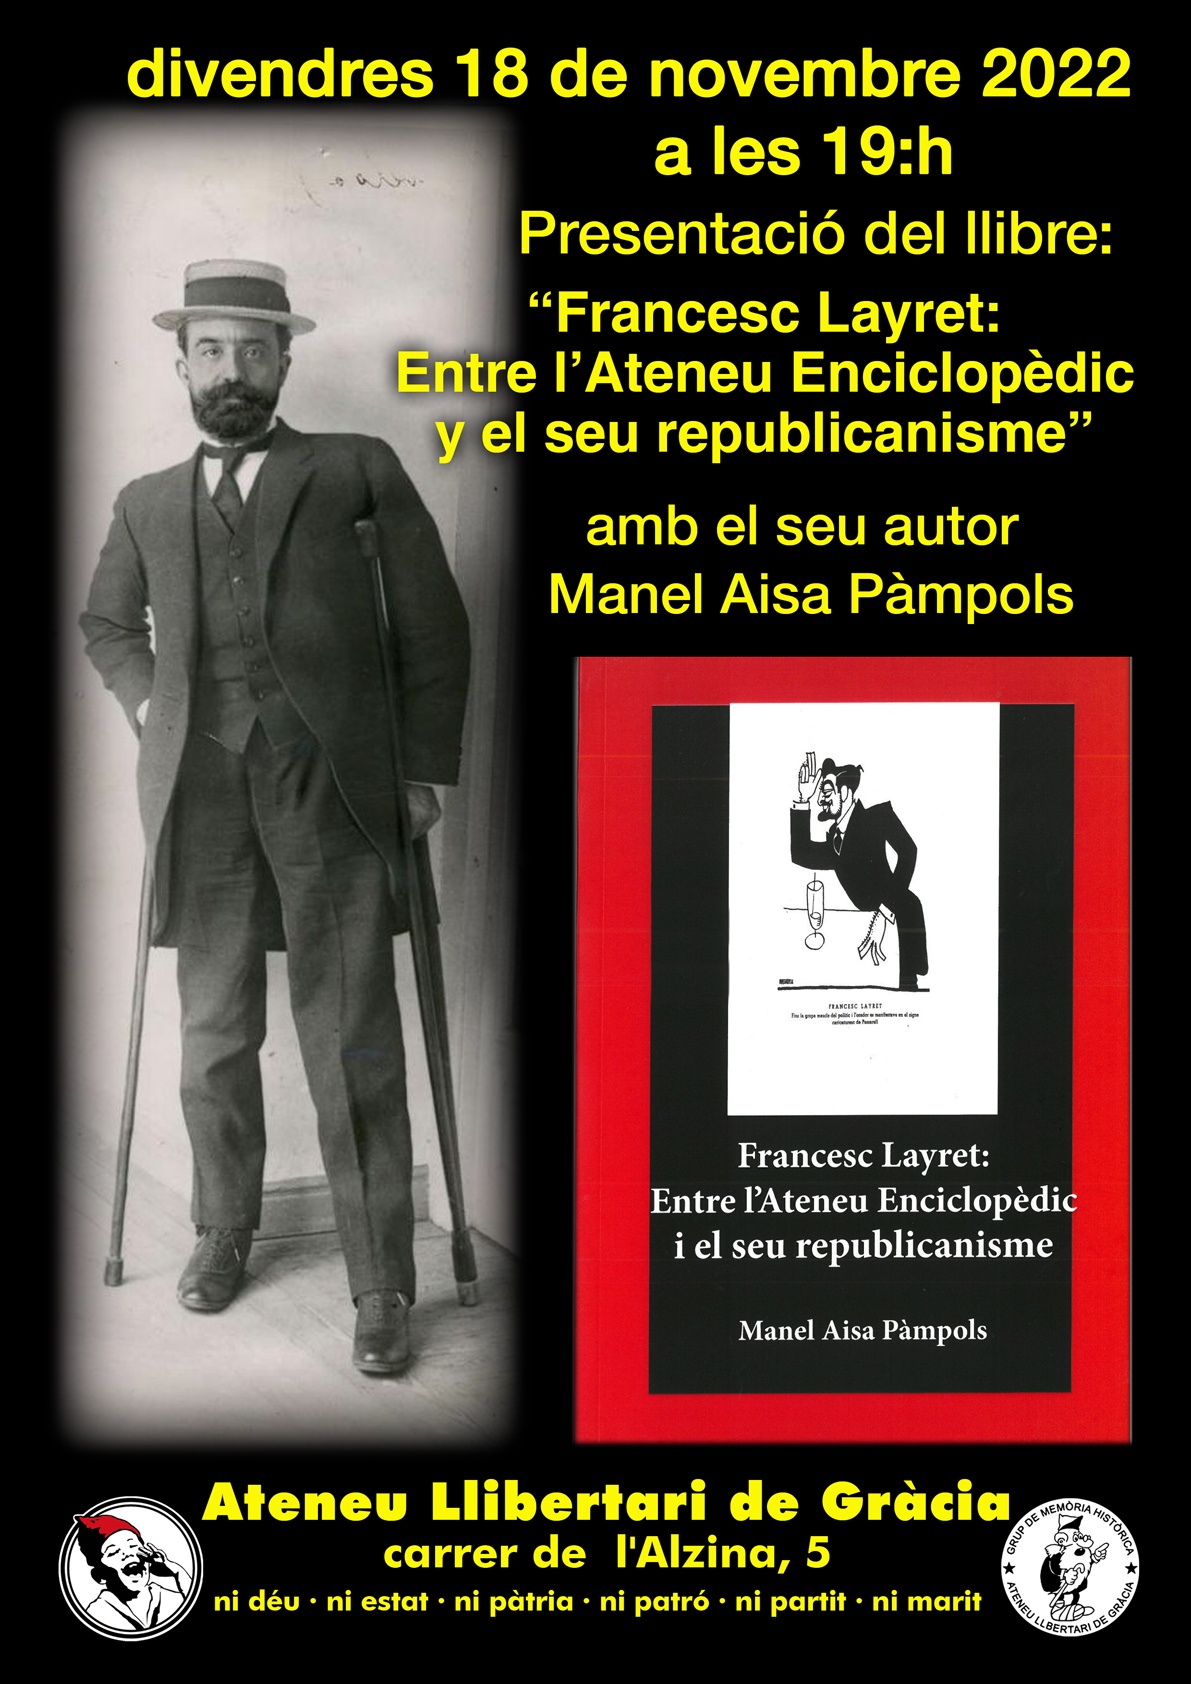 Presentació del llibre: "Francesc Layret: Entre el Ateneu Enciclopèdic i el seu republicanisme"